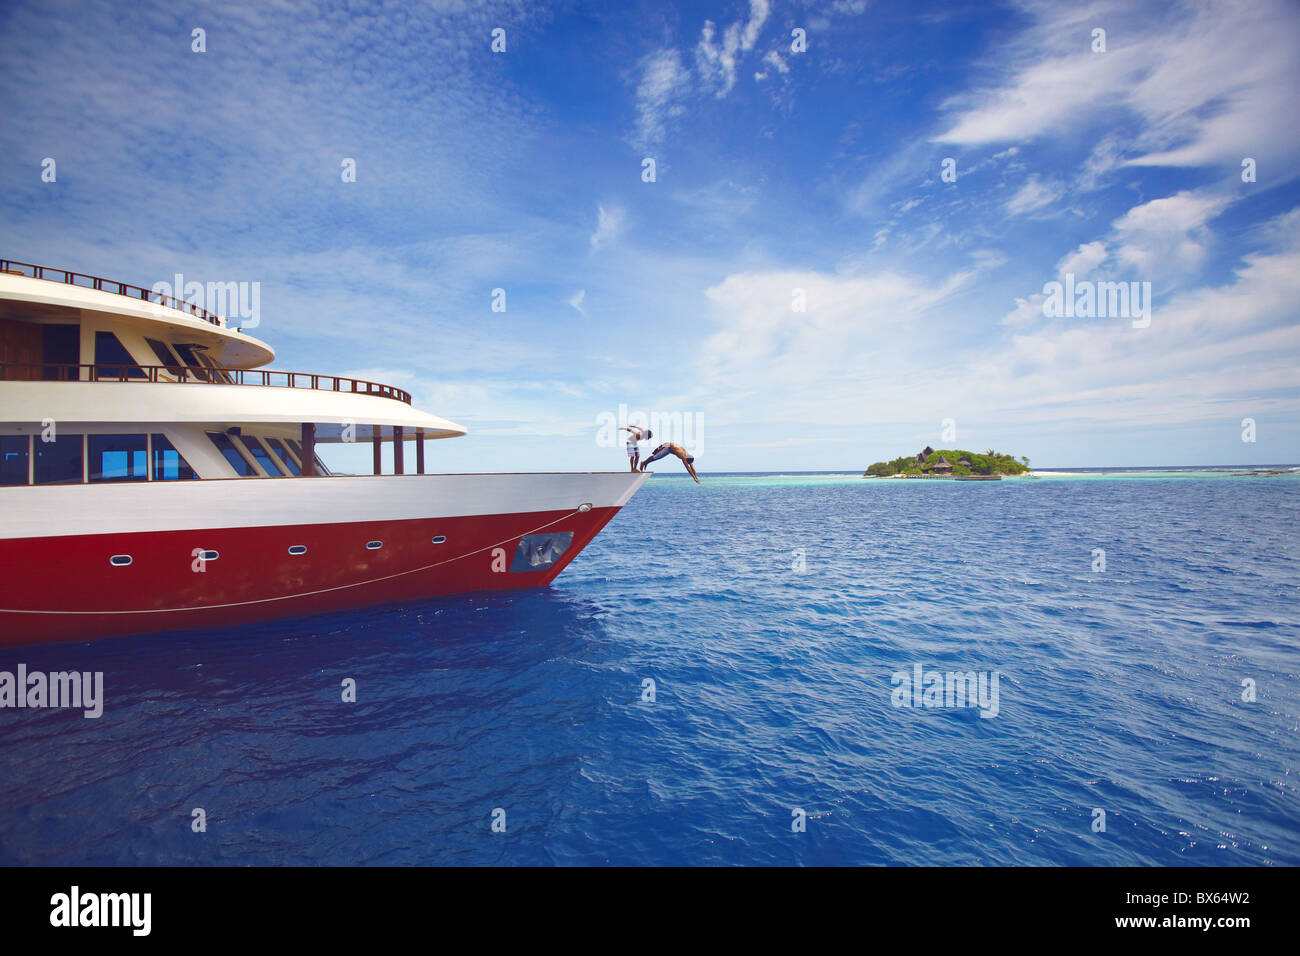 Los jóvenes saltando de un barco en el mar, Maldivas, Océano Índico, Asia Foto de stock